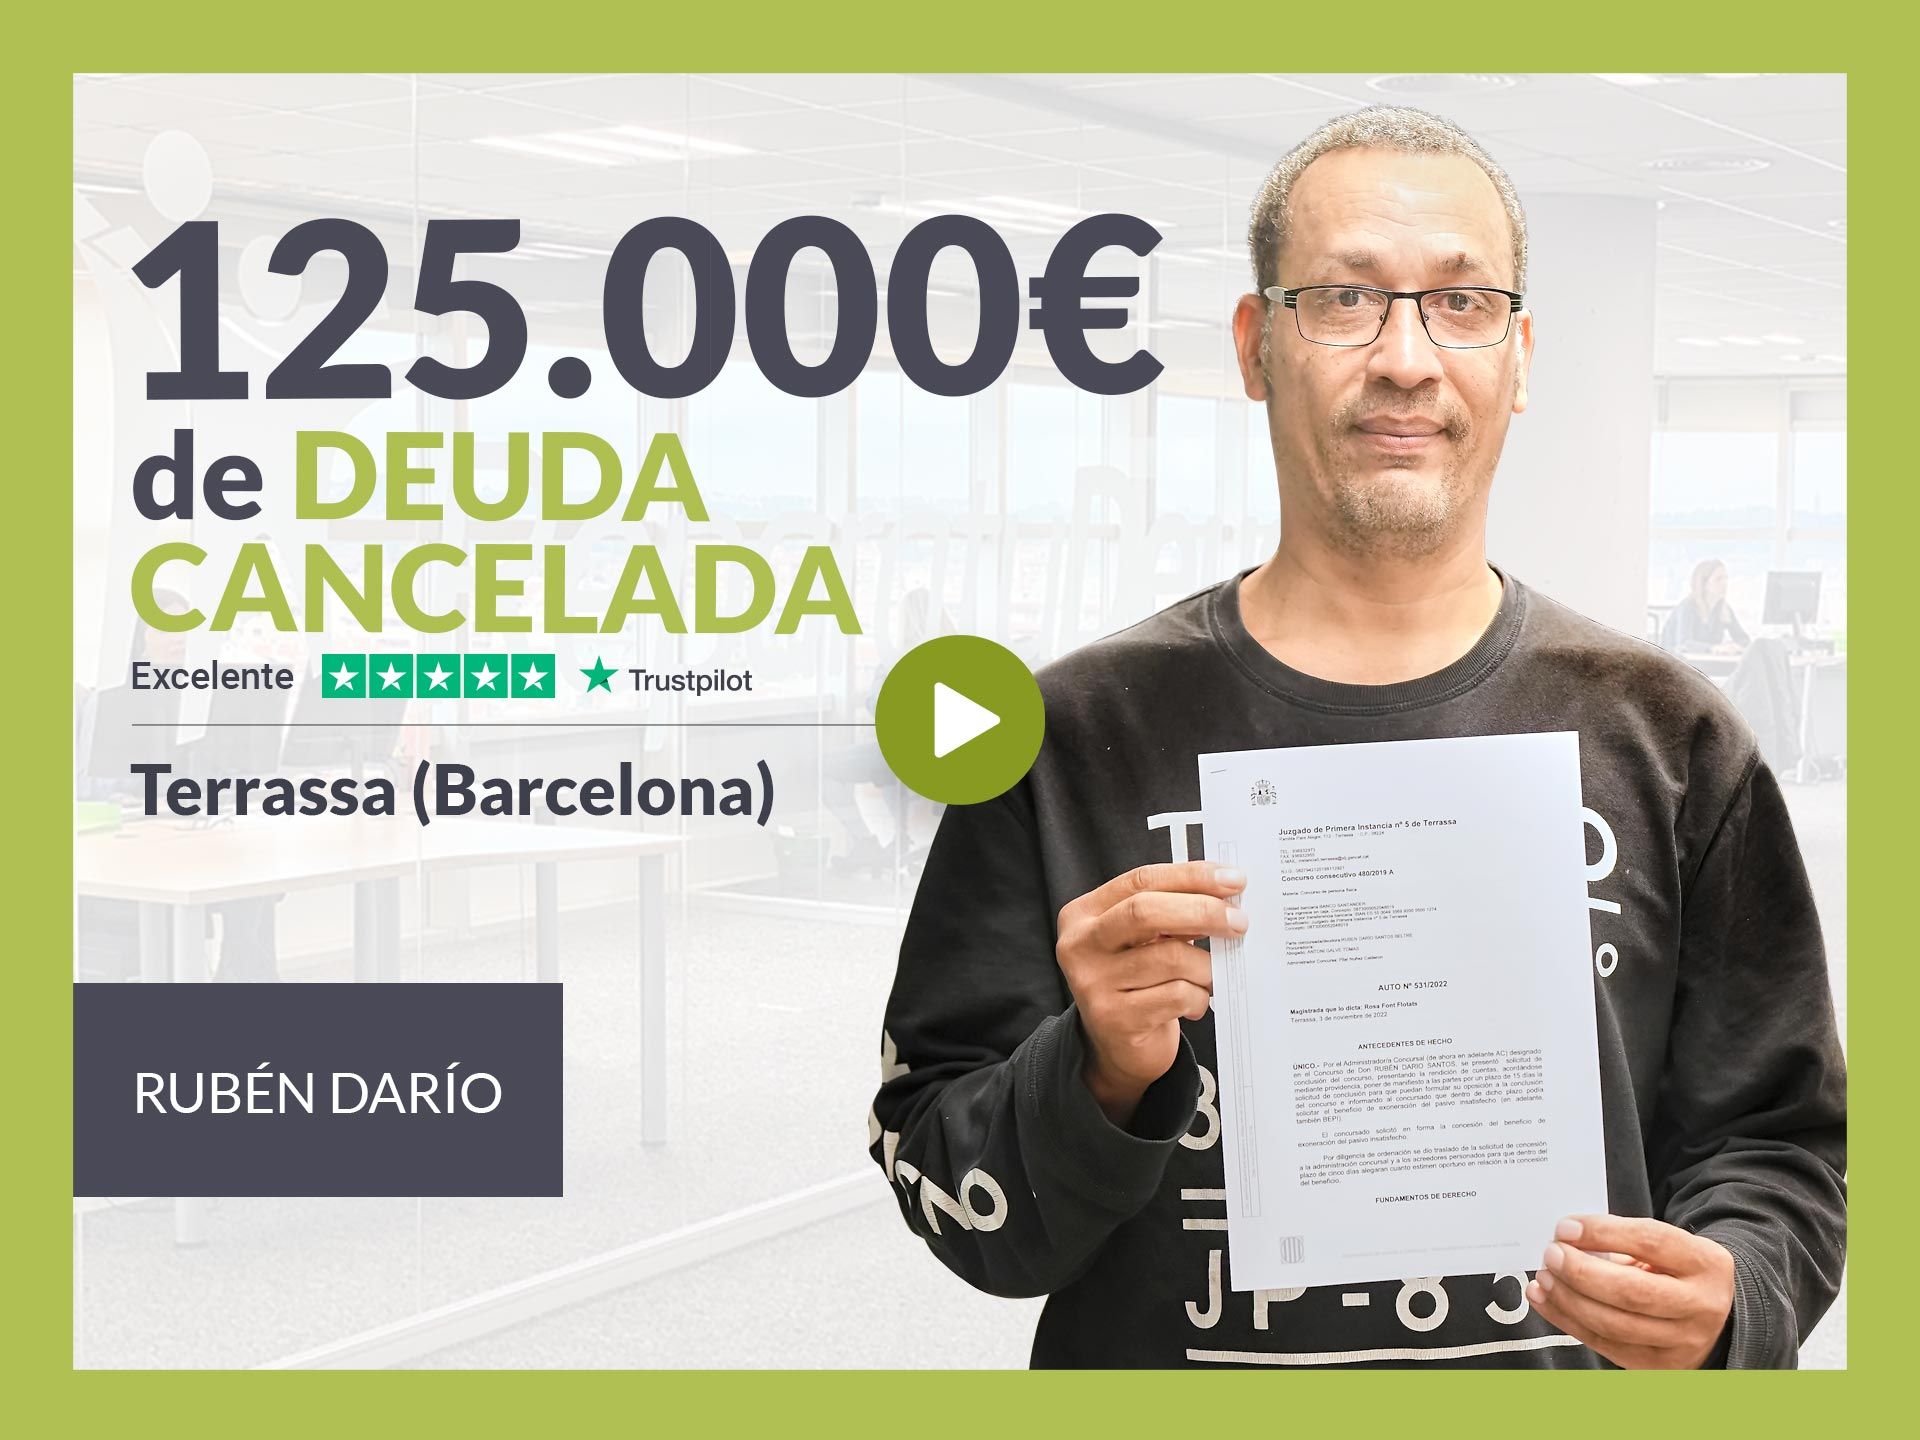 Repara tu Deuda Abogados cancela 125.000? en Terrassa (Barcelona) con la Ley de Segunda Oportunidad